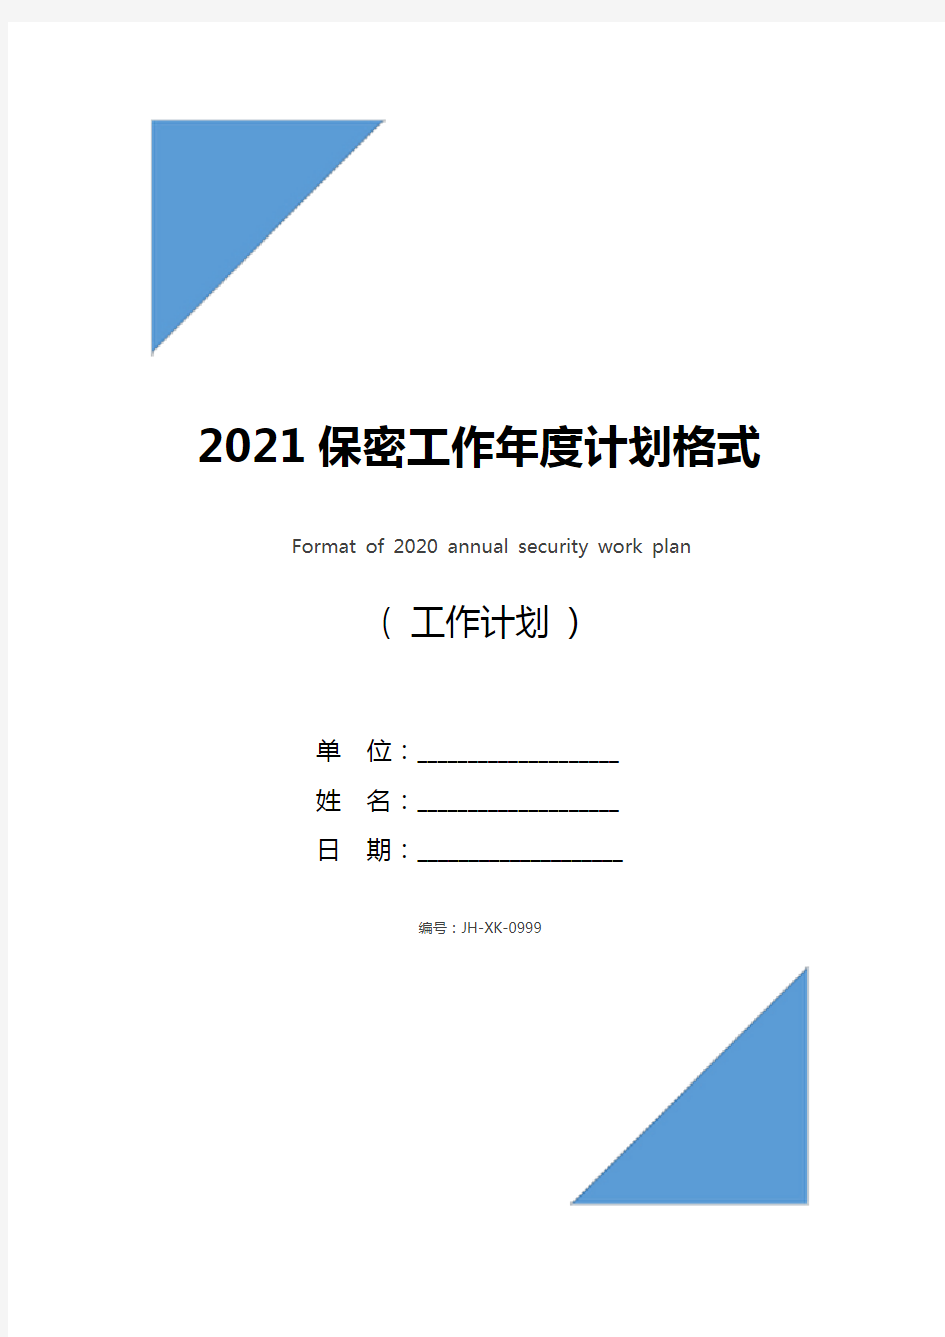 2021保密工作年度计划格式(最新版)